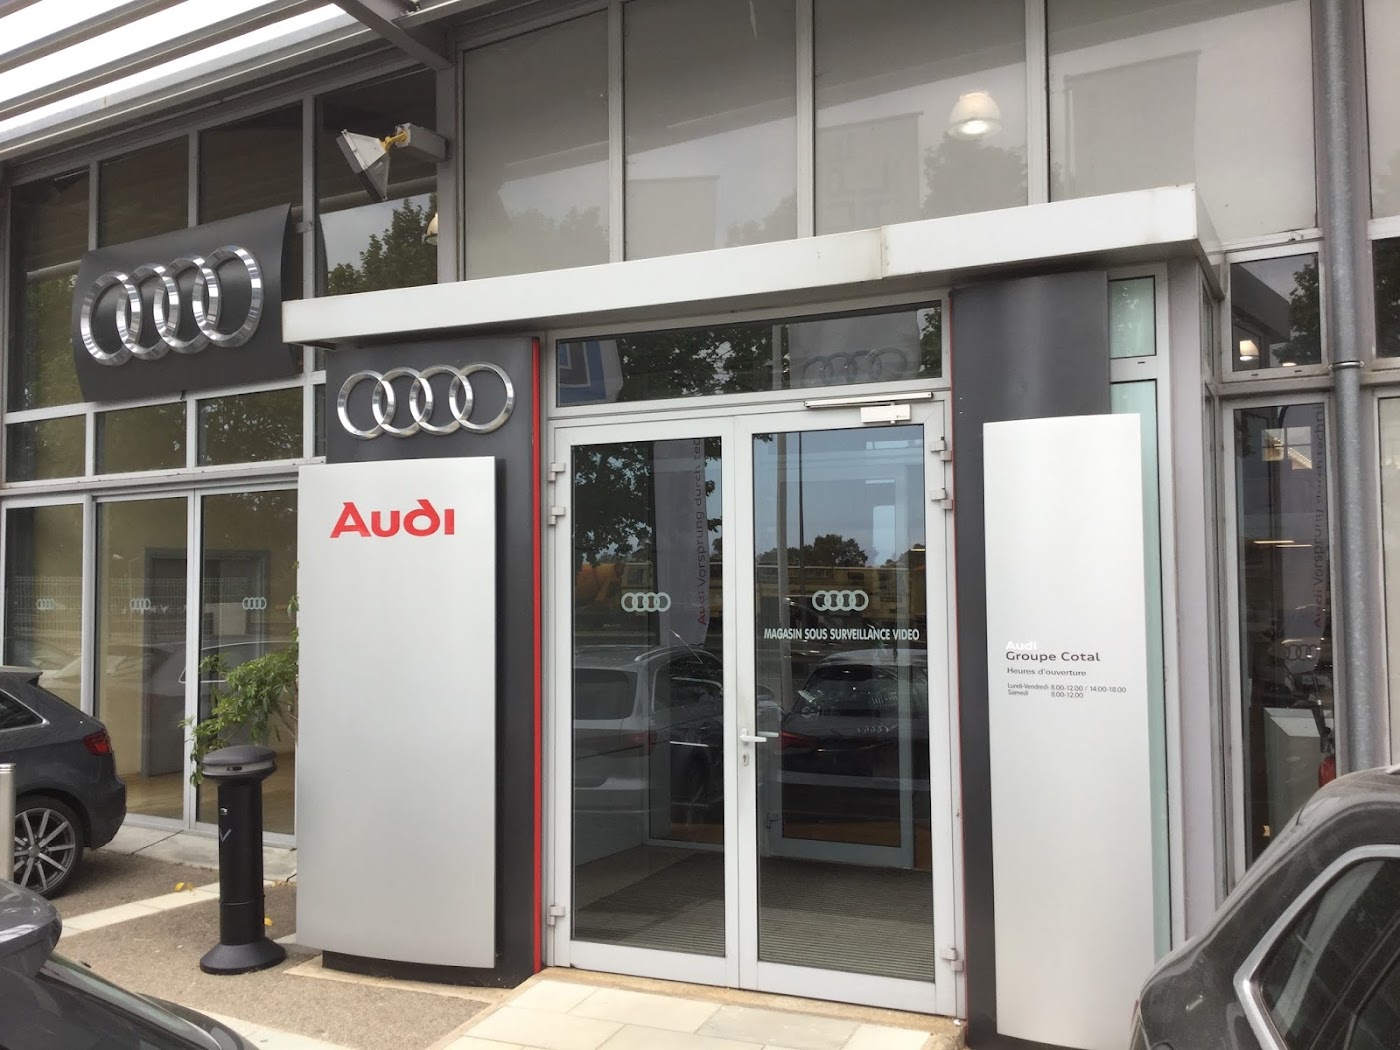 Audi Bastia - Groupe Cotal